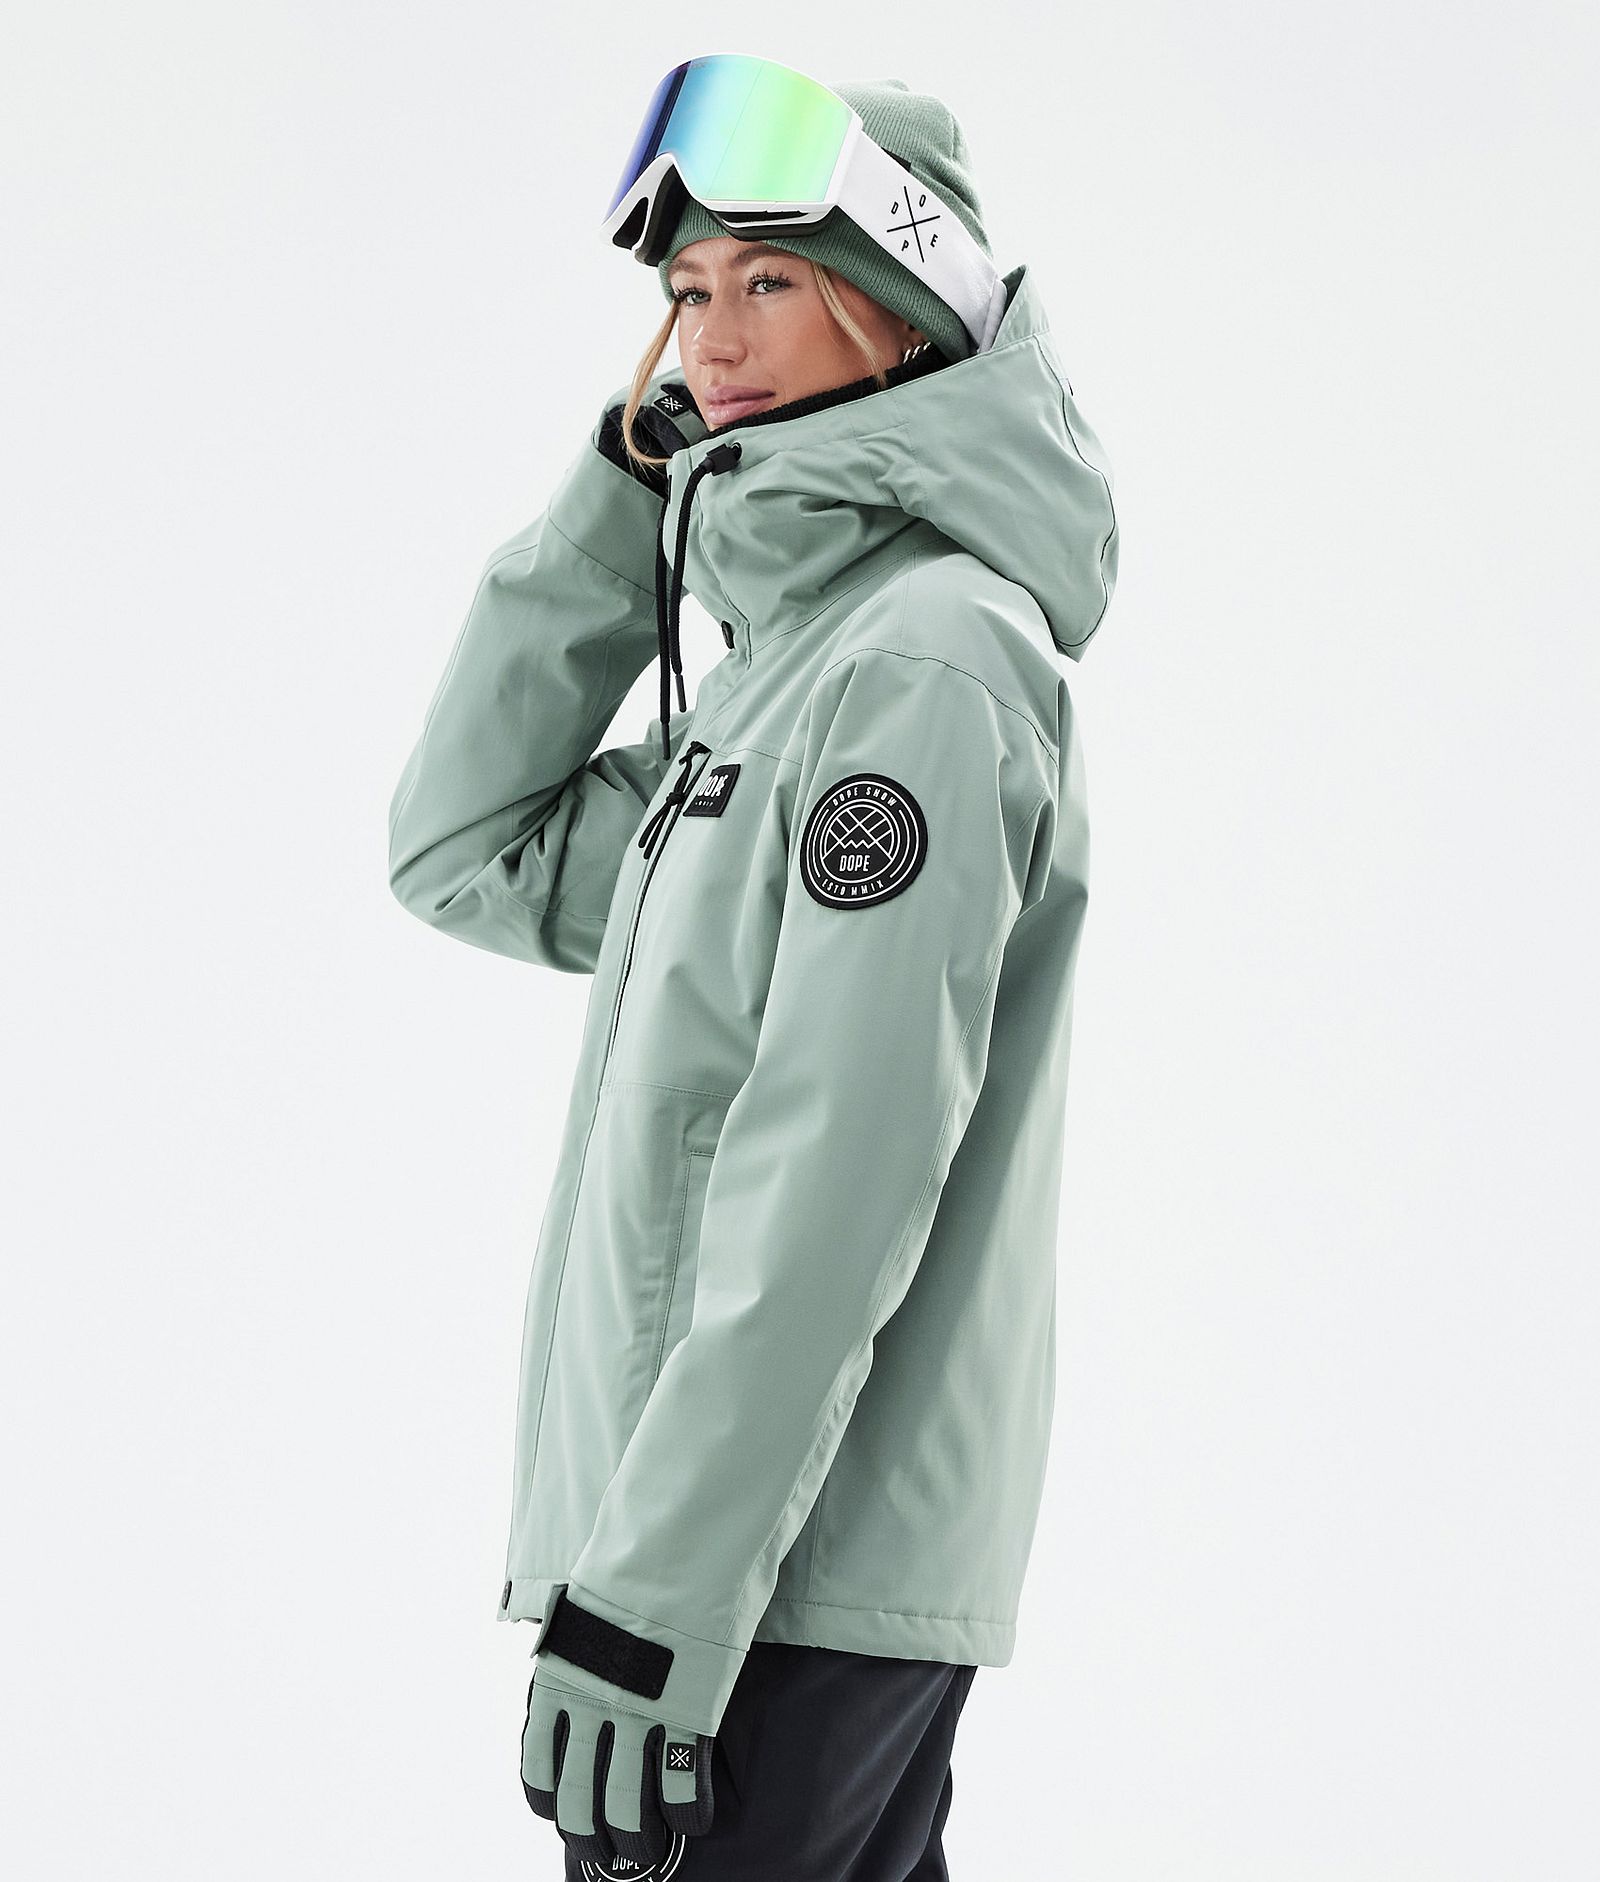 Blizzard W Full Zip Ski Jacket Women Faded Green, Image 5 of 9